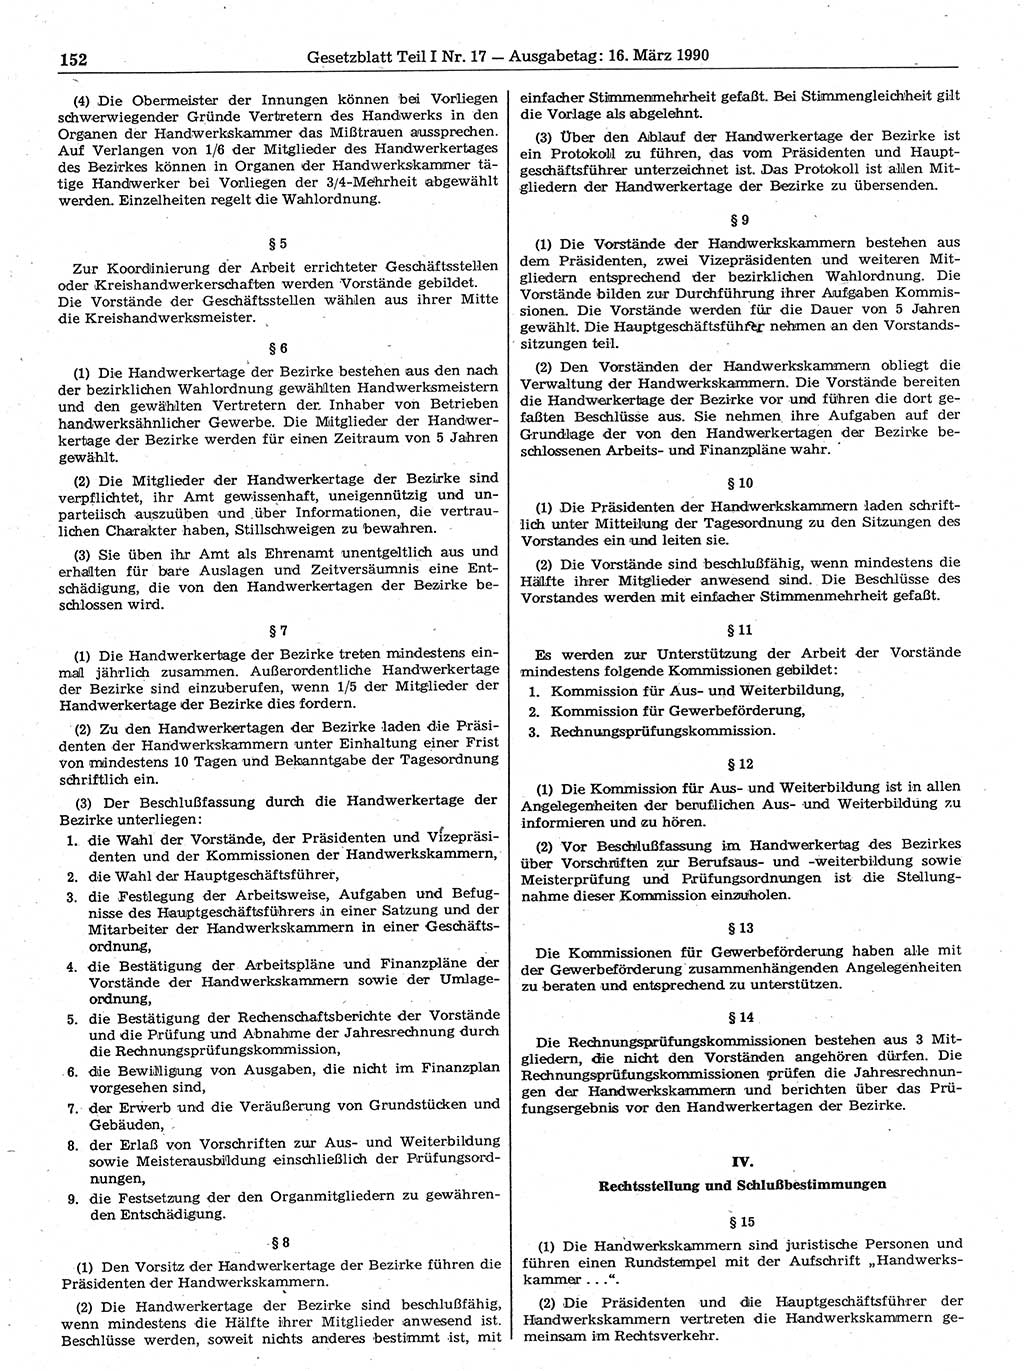 Gesetzblatt (GBl.) der Deutschen Demokratischen Republik (DDR) Teil Ⅰ 1990, Seite 152 (GBl. DDR Ⅰ 1990, S. 152)